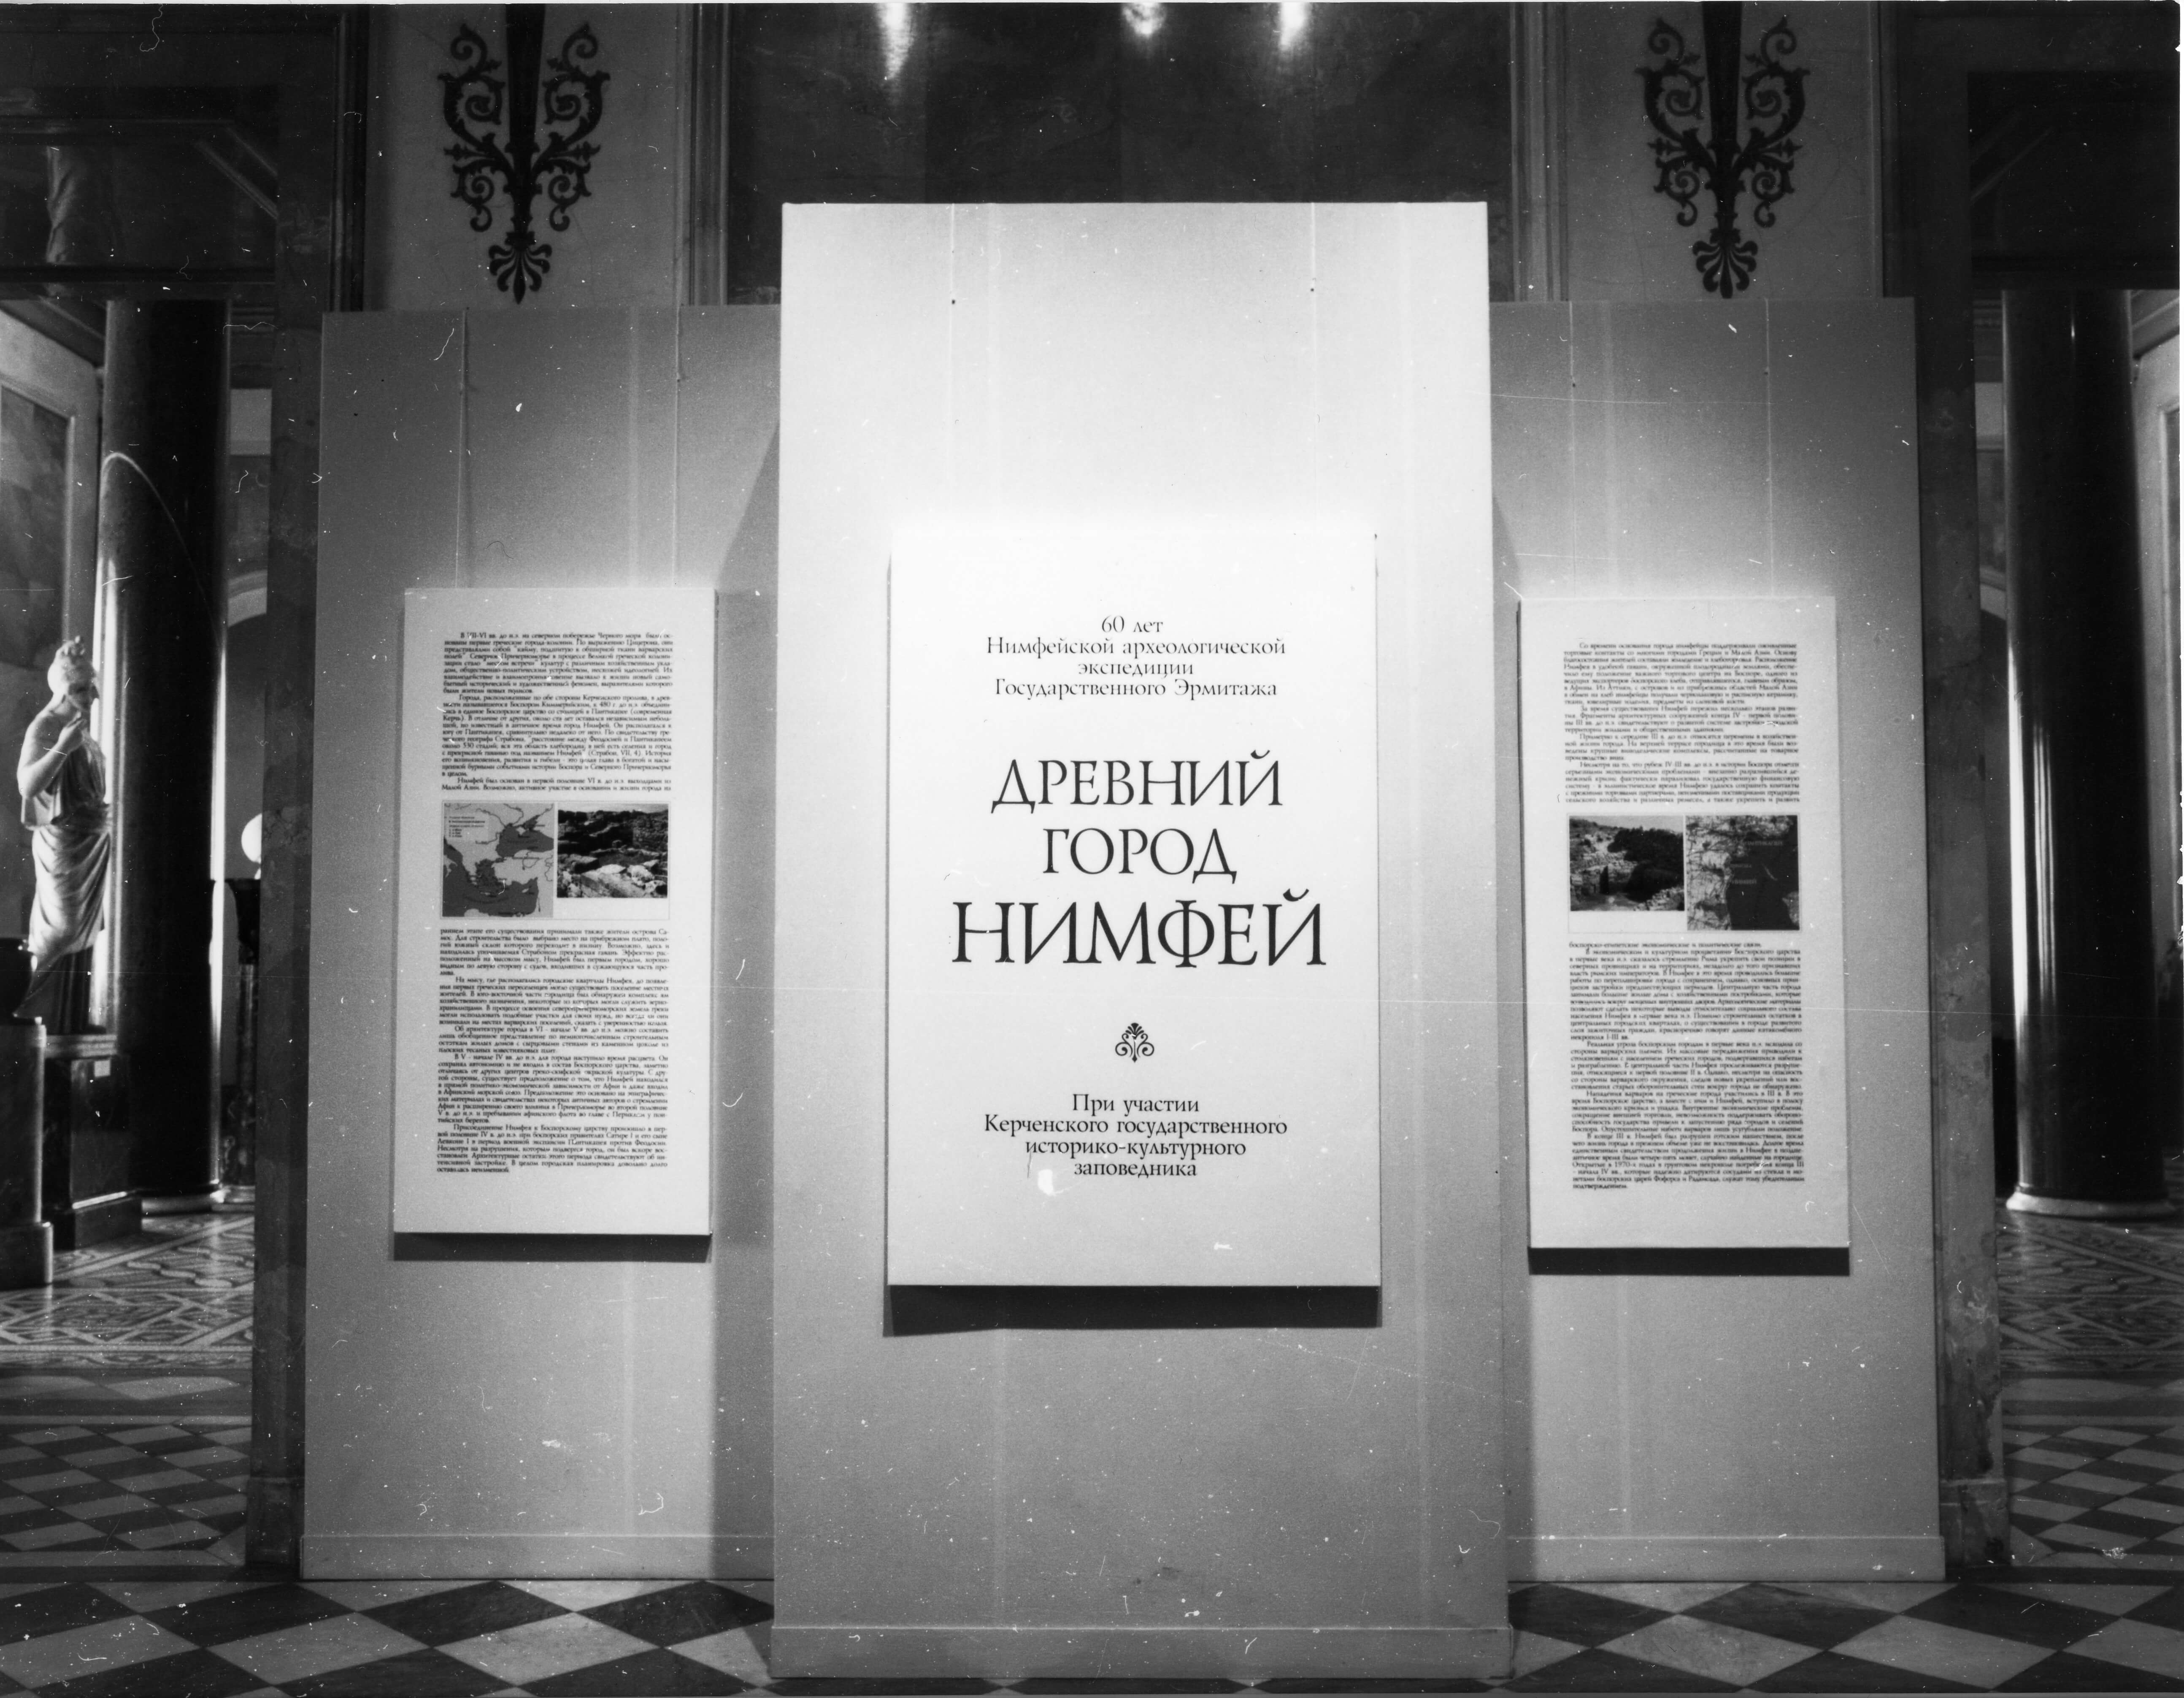 Выставка "Древний город Нимфей" в Овальном зале и зале Геракла. 1999.